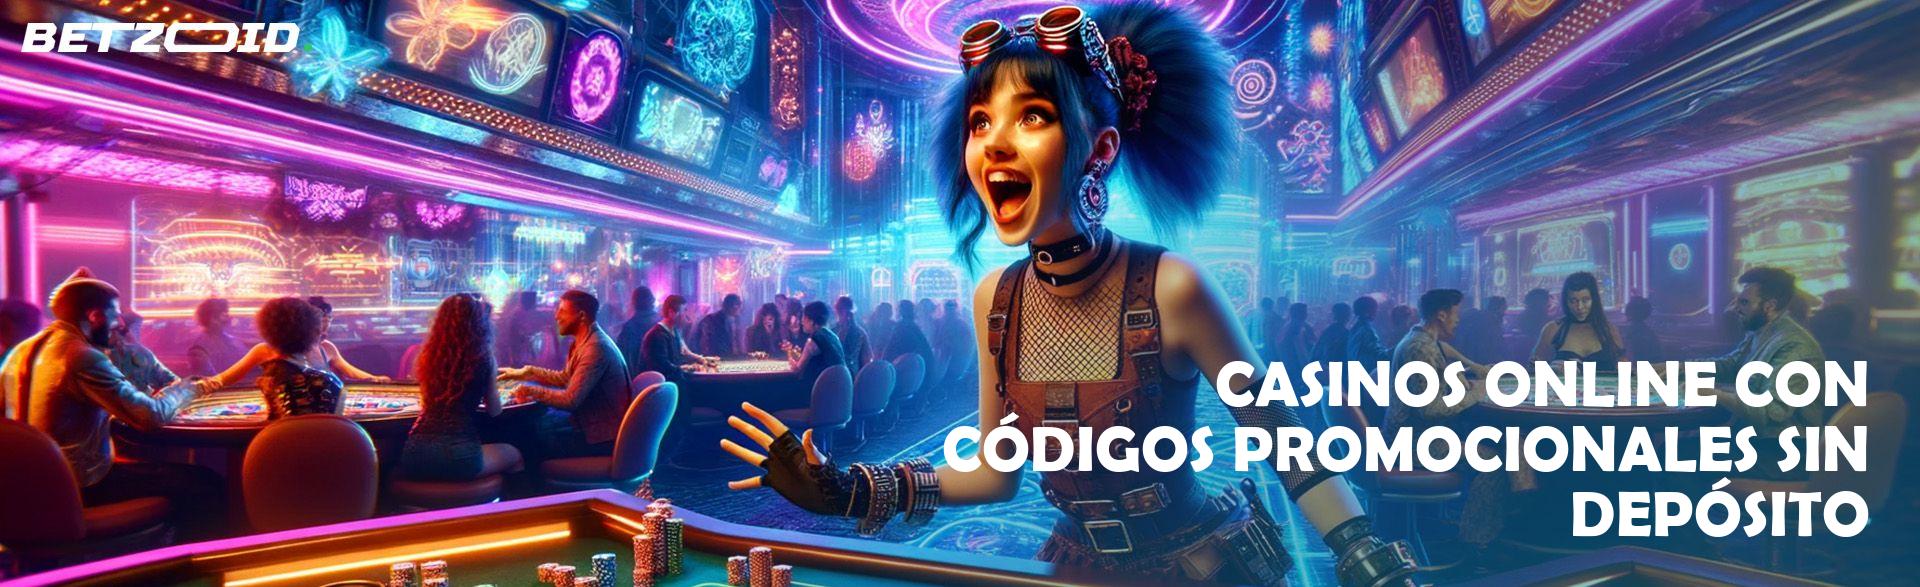 Casinos Online con Códigos Promocionales sin Depósito.